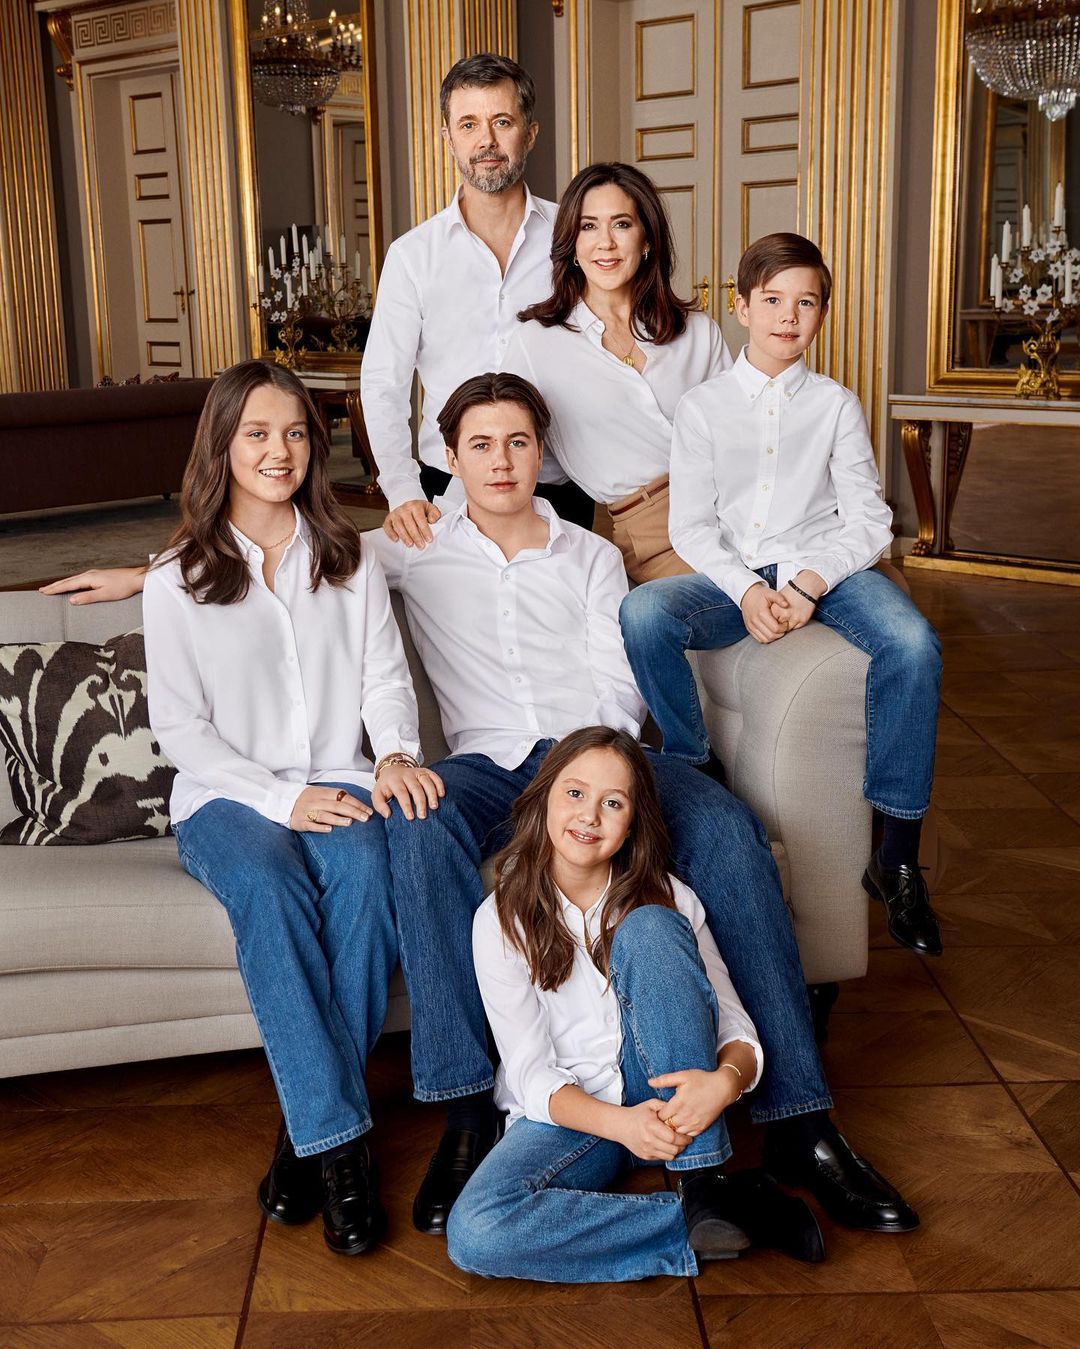 Frederik et Mary avec leurs enfants vêtus de chemises blanches et de jeans bleus assortis